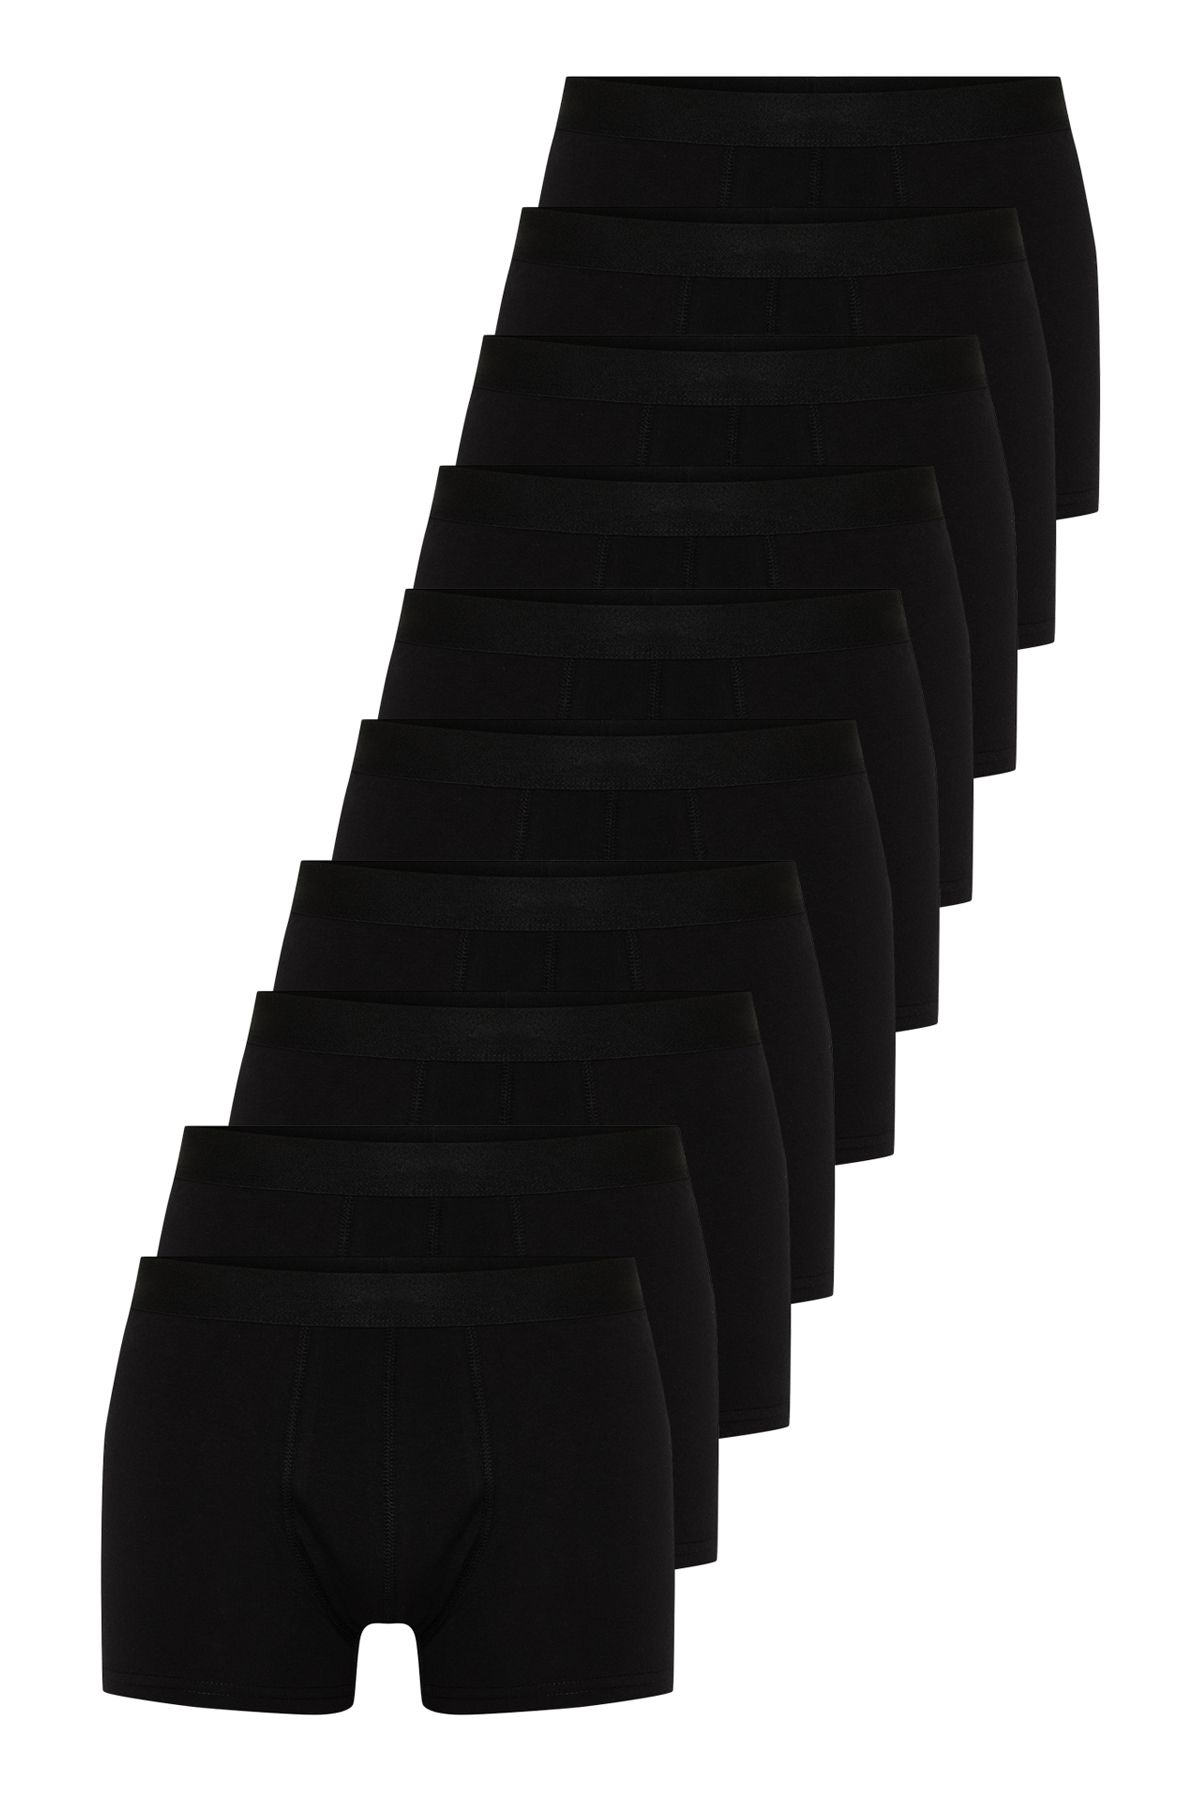 TRENDYOL MAN Siyah  Çok Renkli Basic 10'lu Paket Pamuklu Boxer TMNSS24BX00010